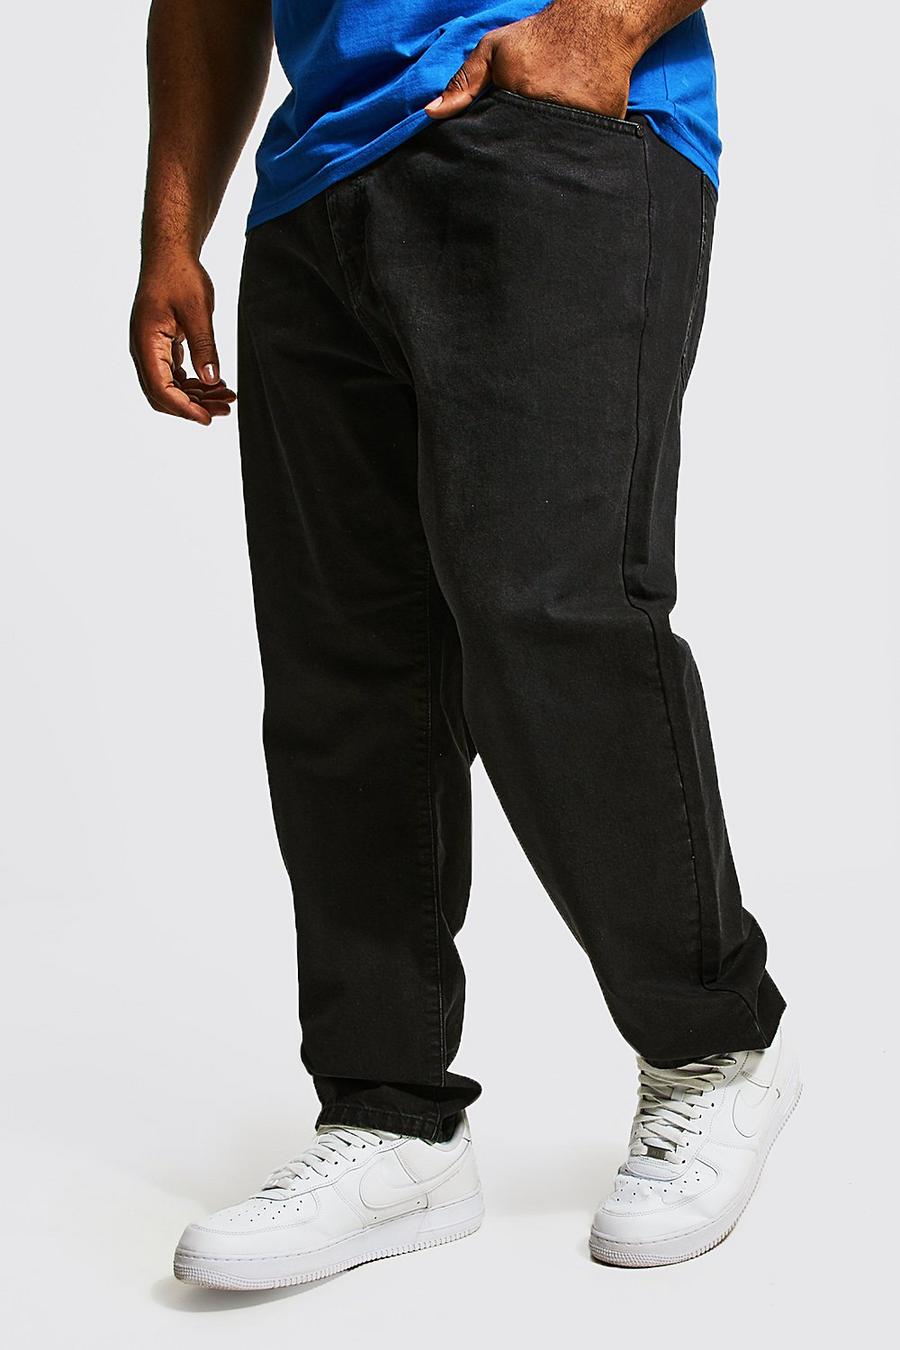 Jeans Plus Size Slim Fit con cotone riciclato, Washed black